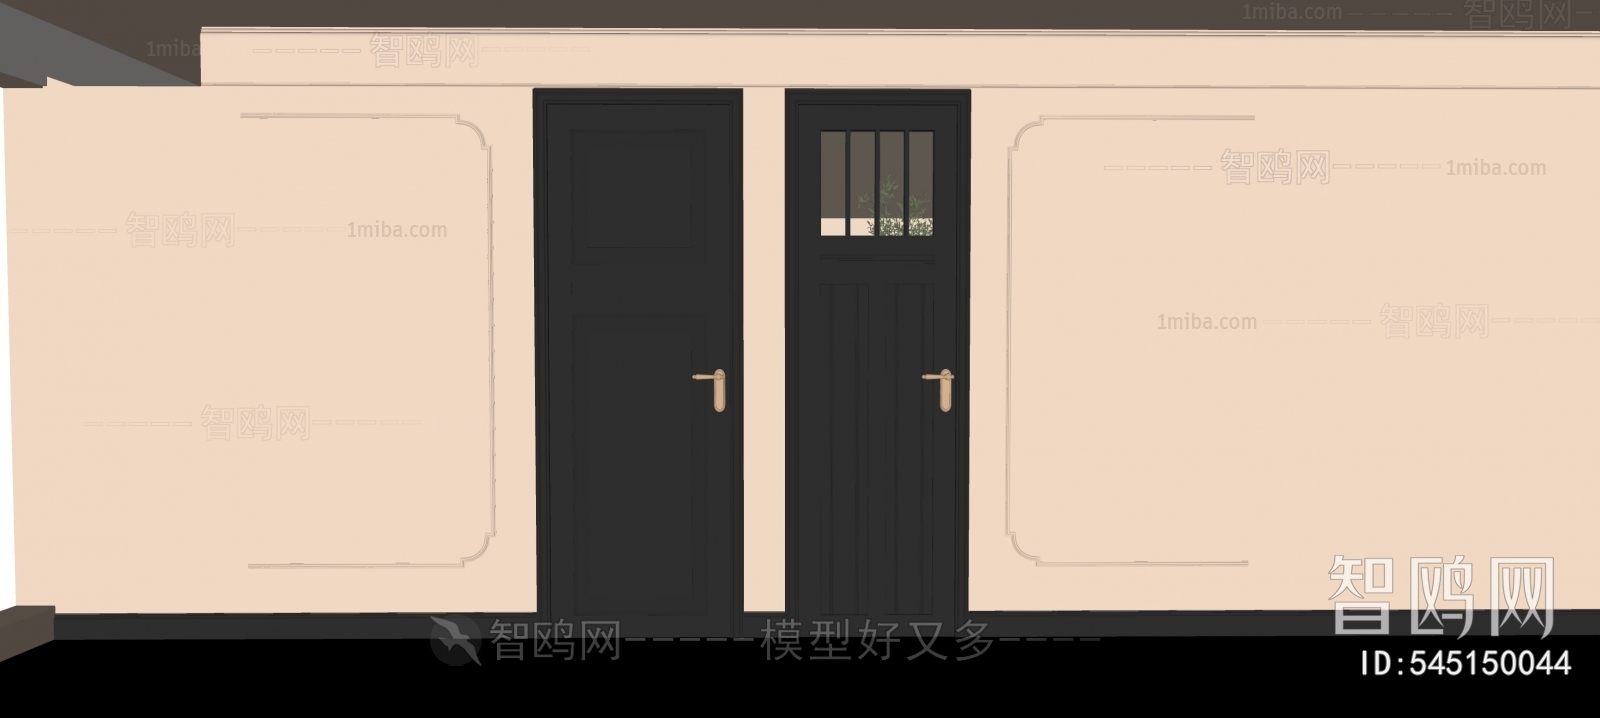 Modern Wabi-sabi Style Single Door